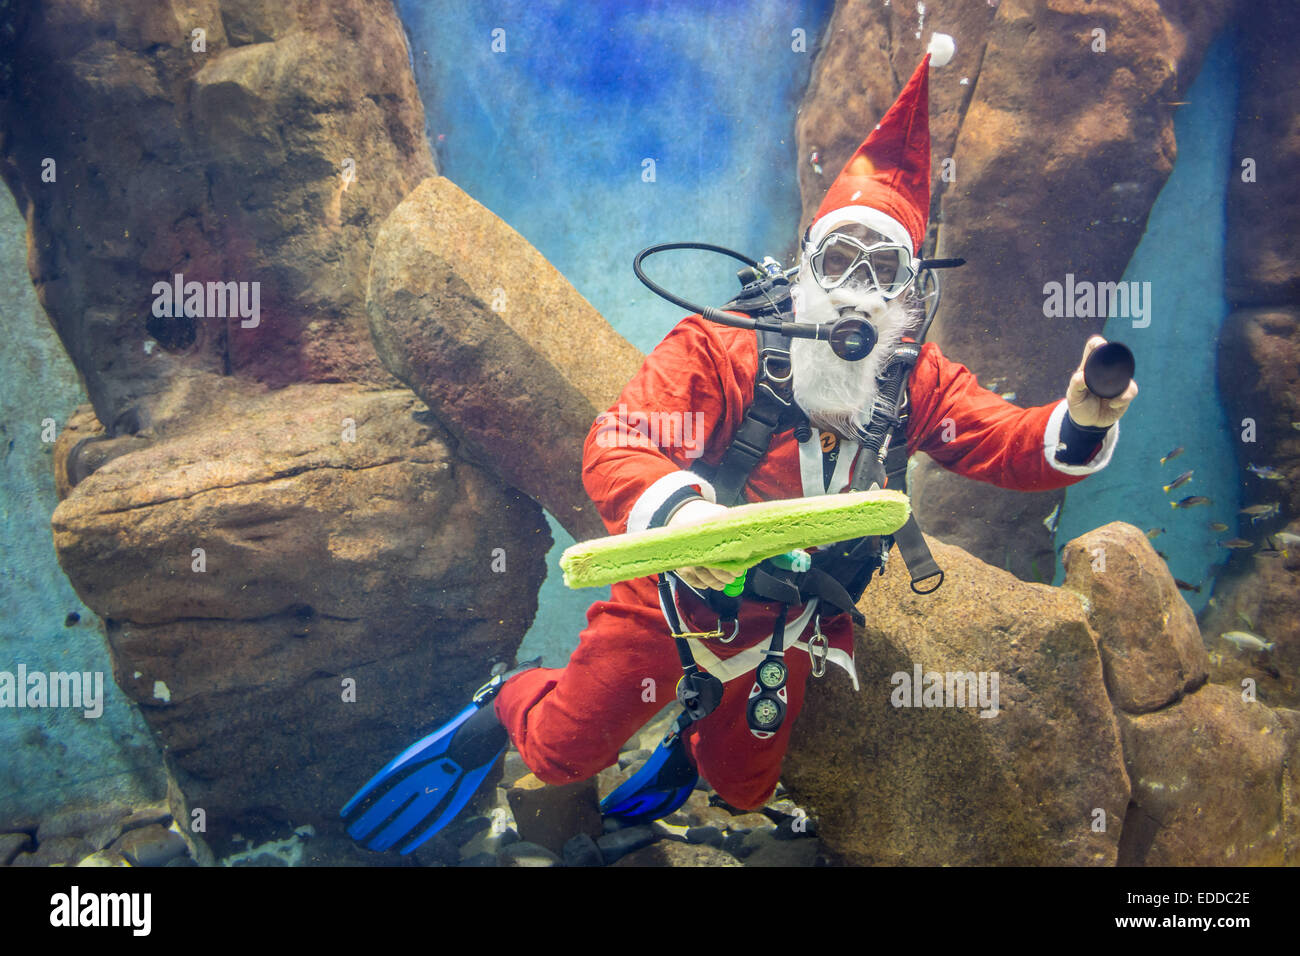 Taucher-Rdessed als Weihnachtsmann Reinigung Aquarium Breslauer Africarium Zoo Stockfoto